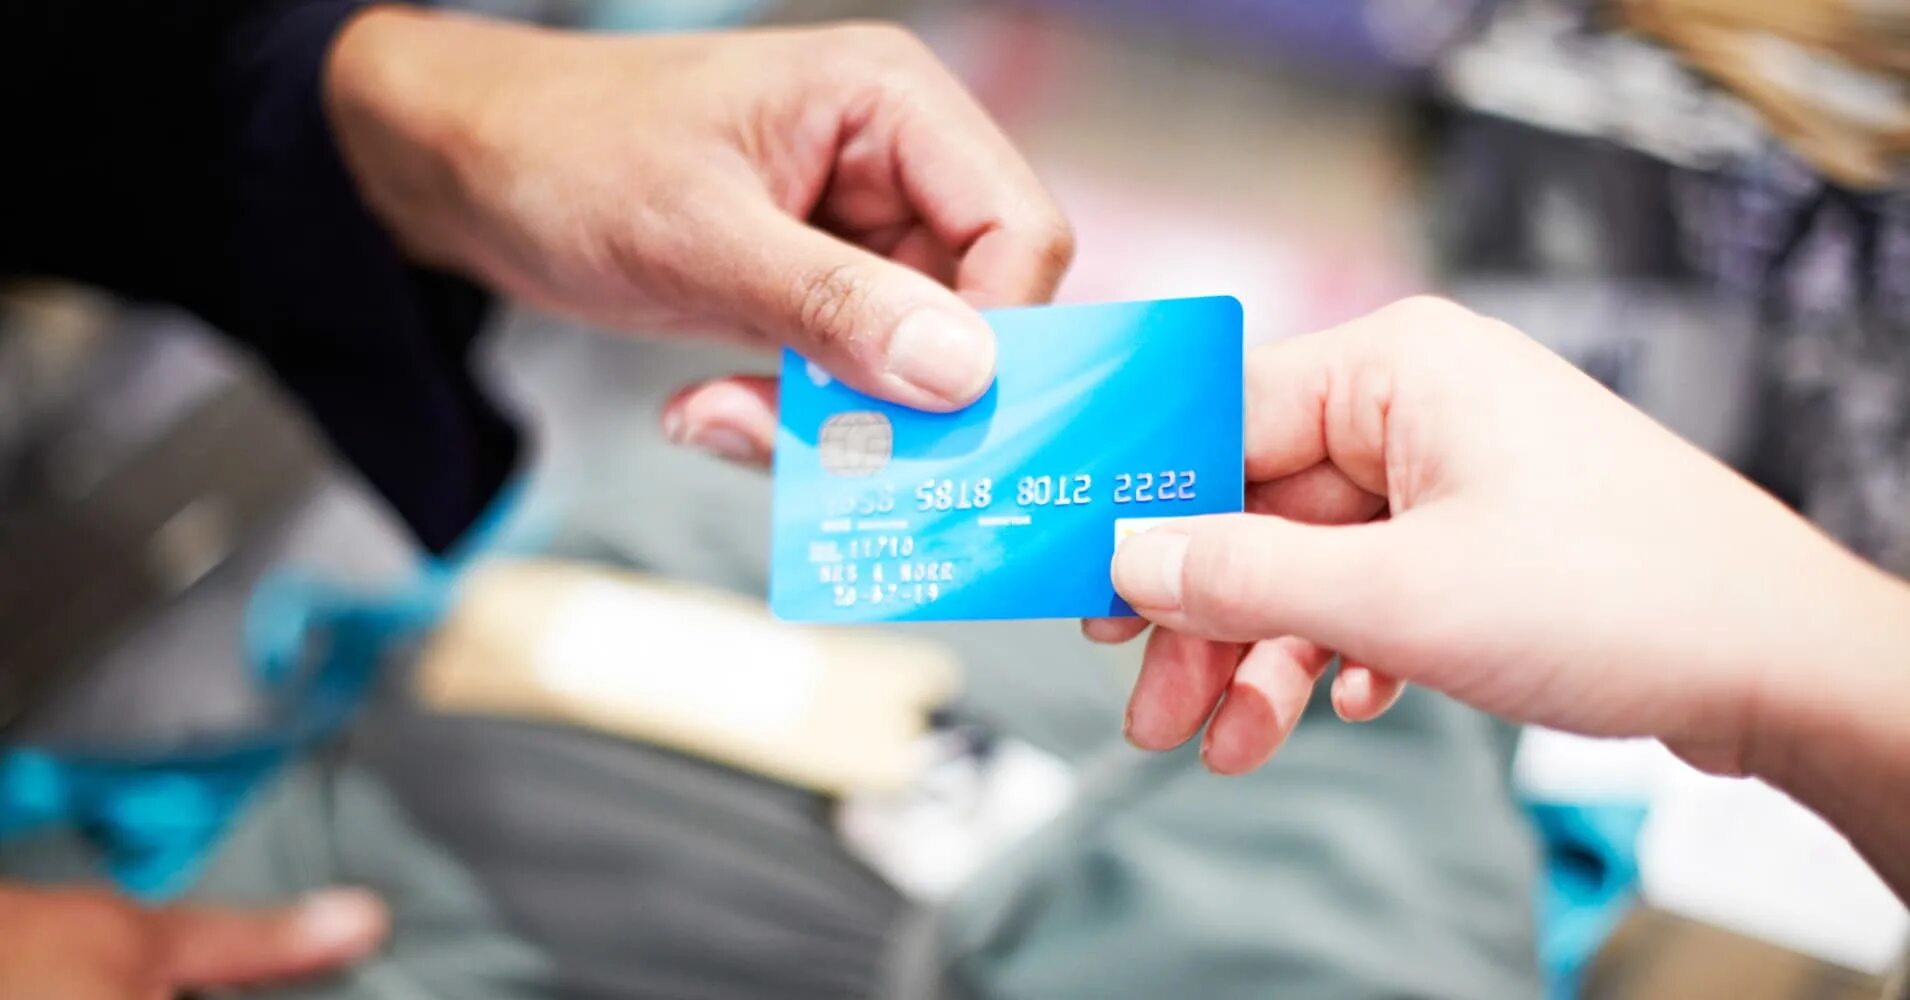 Как получить кредитку. Кредитная карта. Выдача кредитных карт. Кредитная карта в руке. Фото с банковской картой в руках.